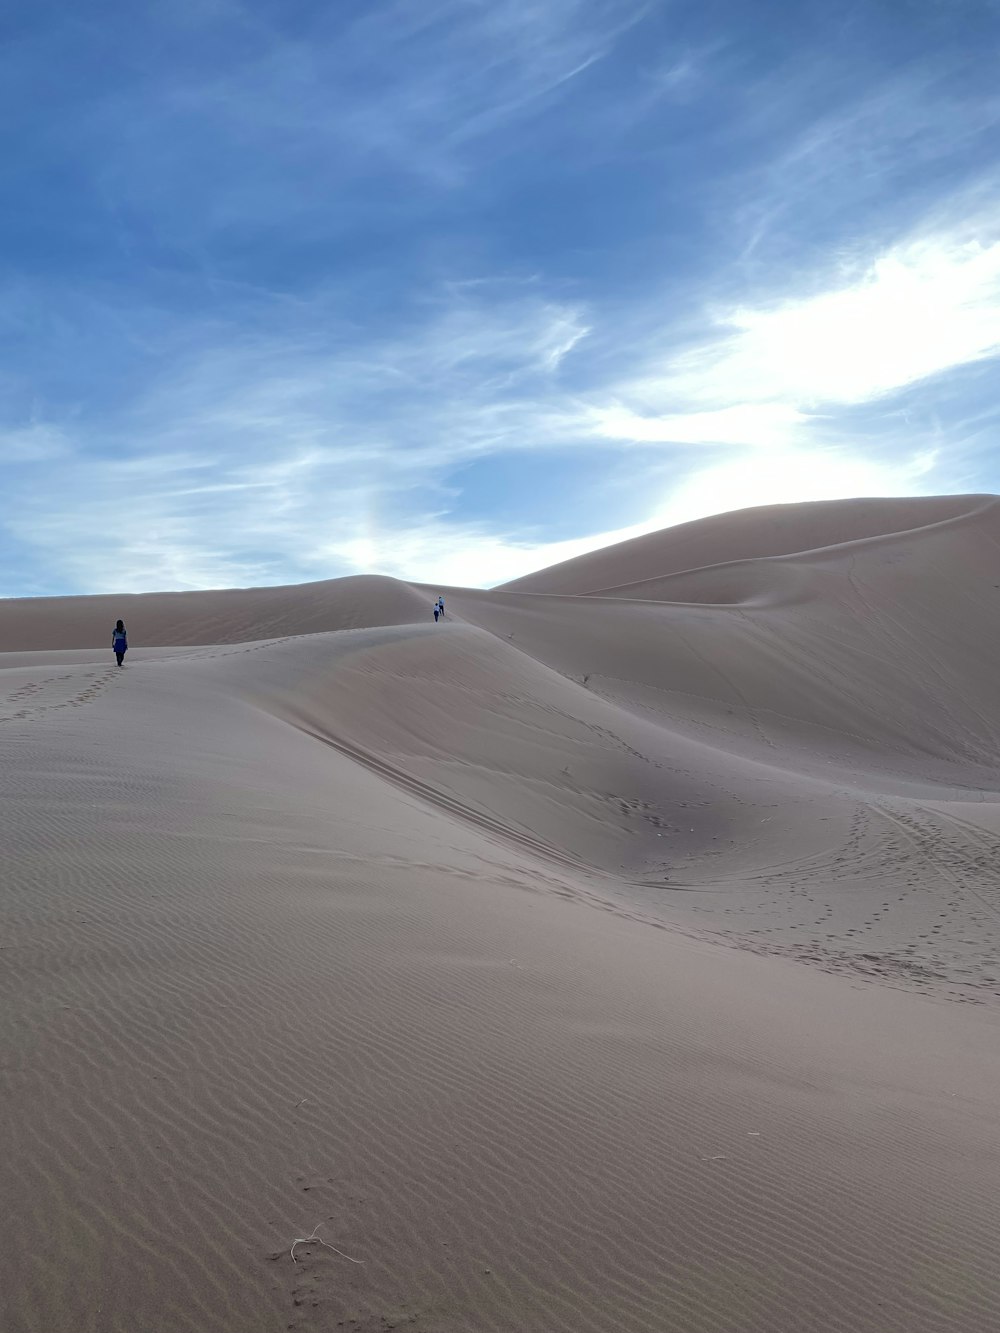 a person walking across a sandy field under a blue sky